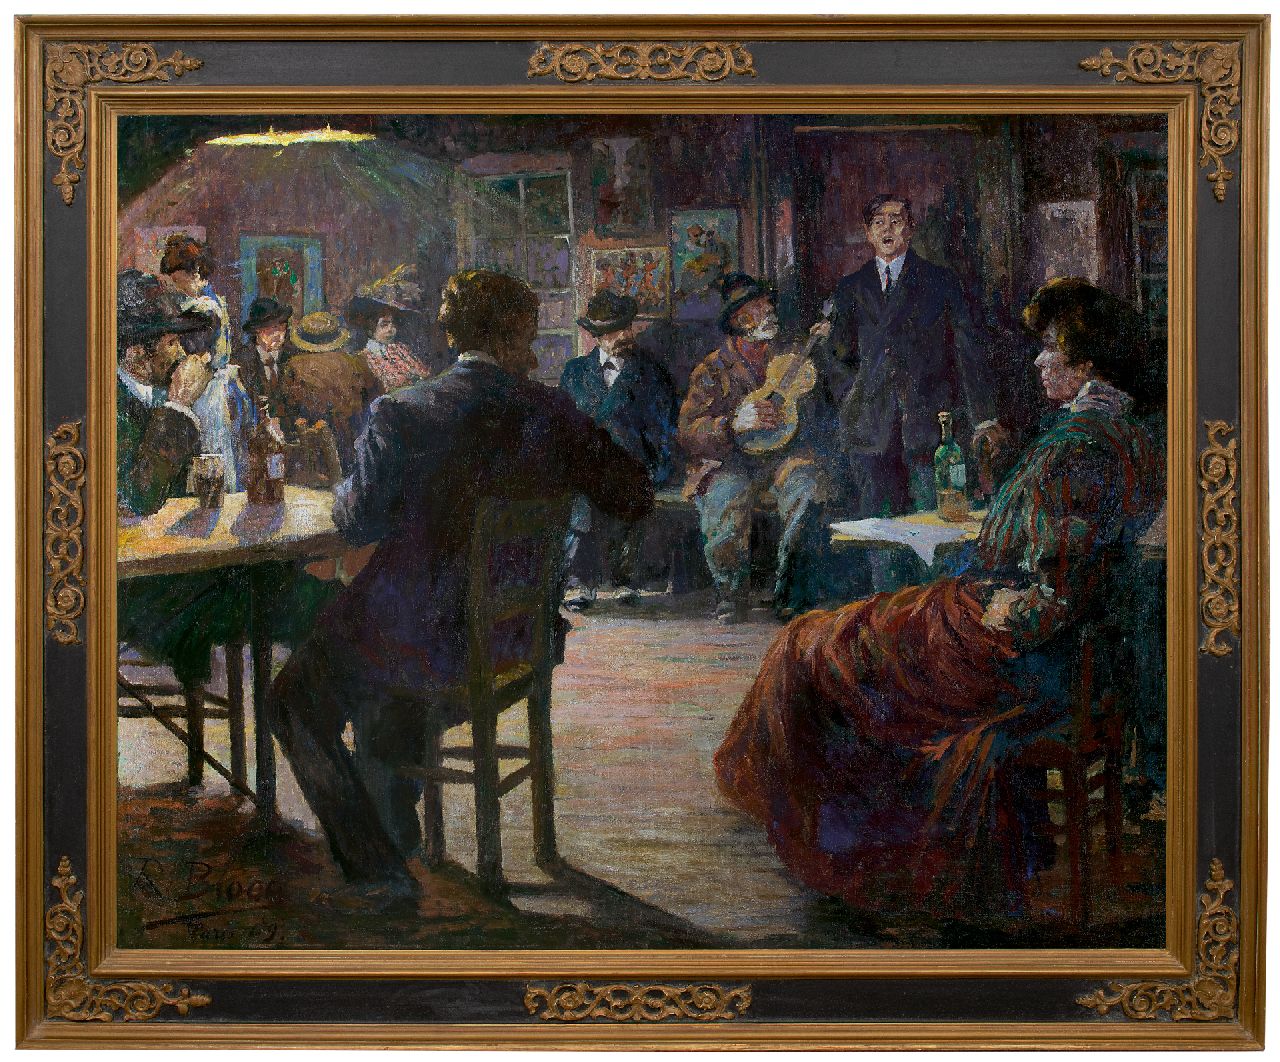 Bloos R.W.  | 'Richard' Willi Bloos, Café chantant, olieverf op doek 132,5 x 165,8 cm, gesigneerd linksonder en gedateerd 'Paris' 09